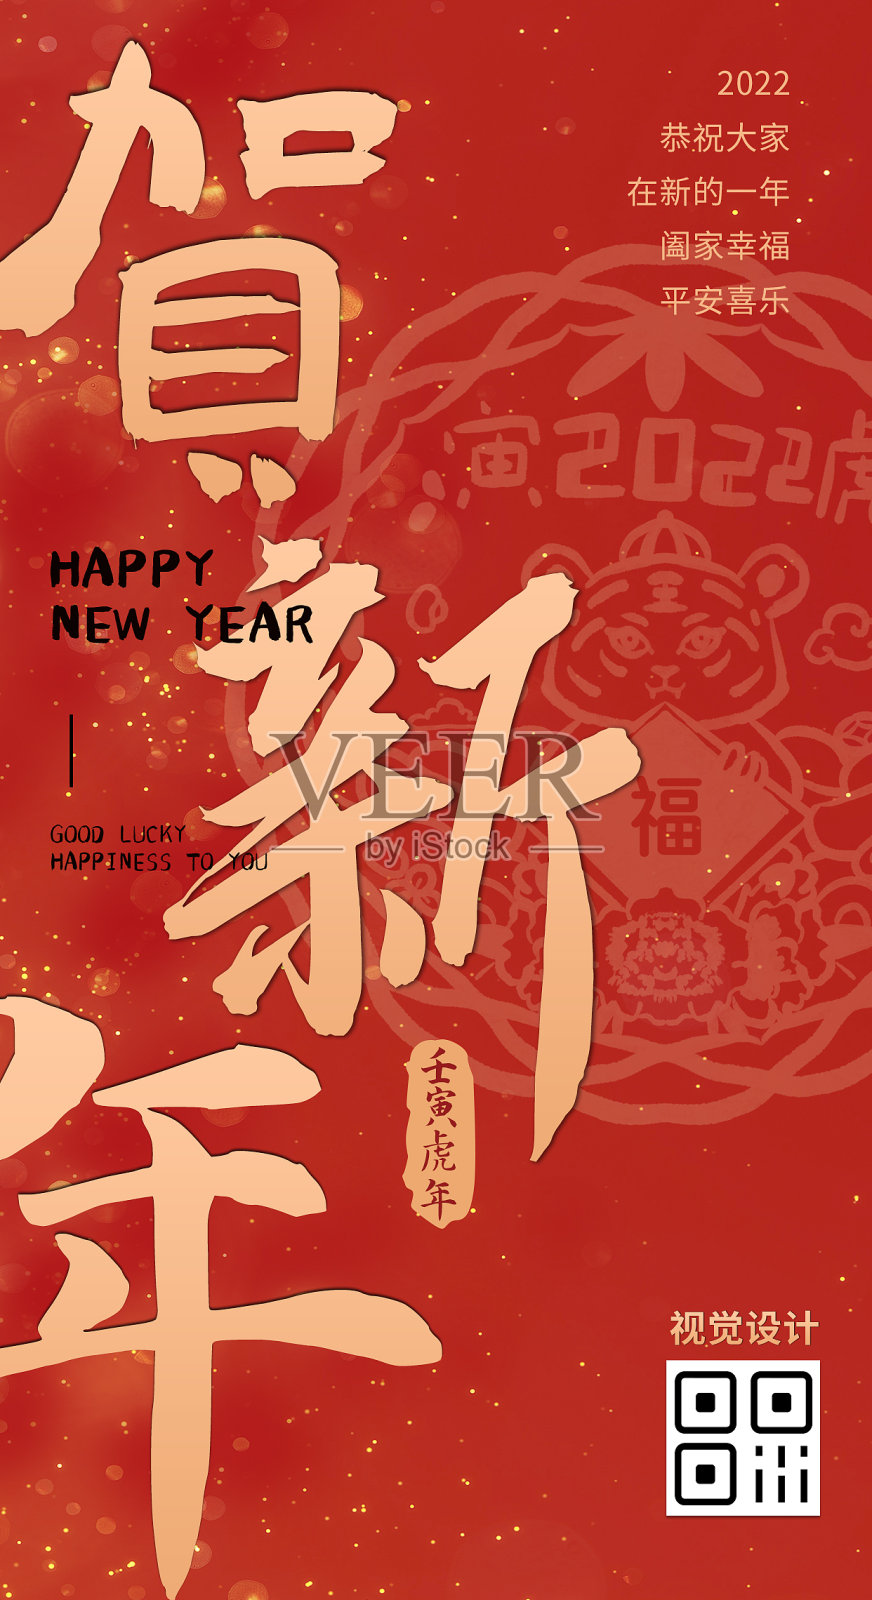 红色简约大气喜庆贺新年日签手机海报模板设计模板素材